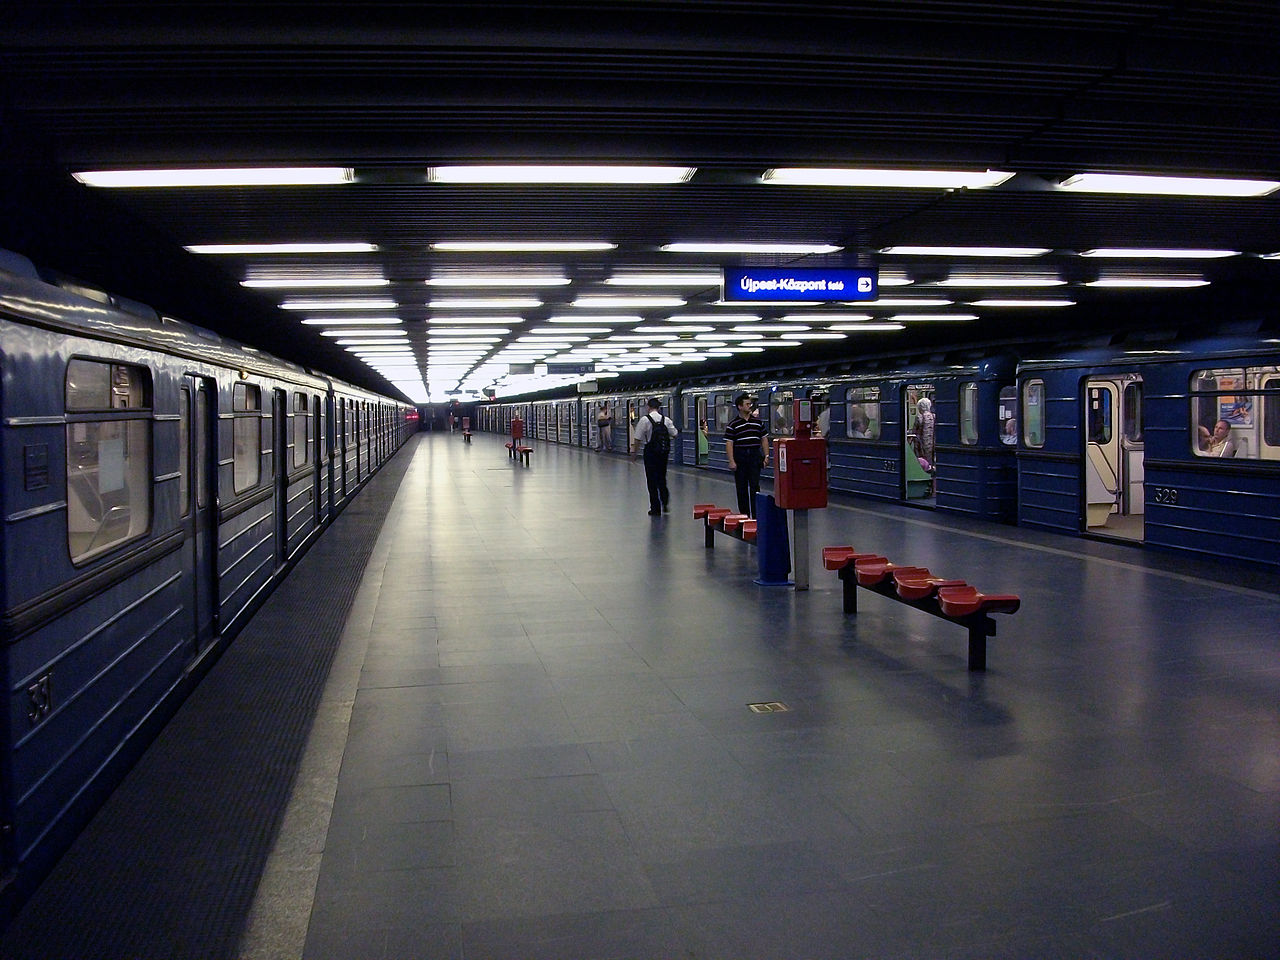 Trükköznek Simicskáék: továbbra is lesz Metropol a metróban